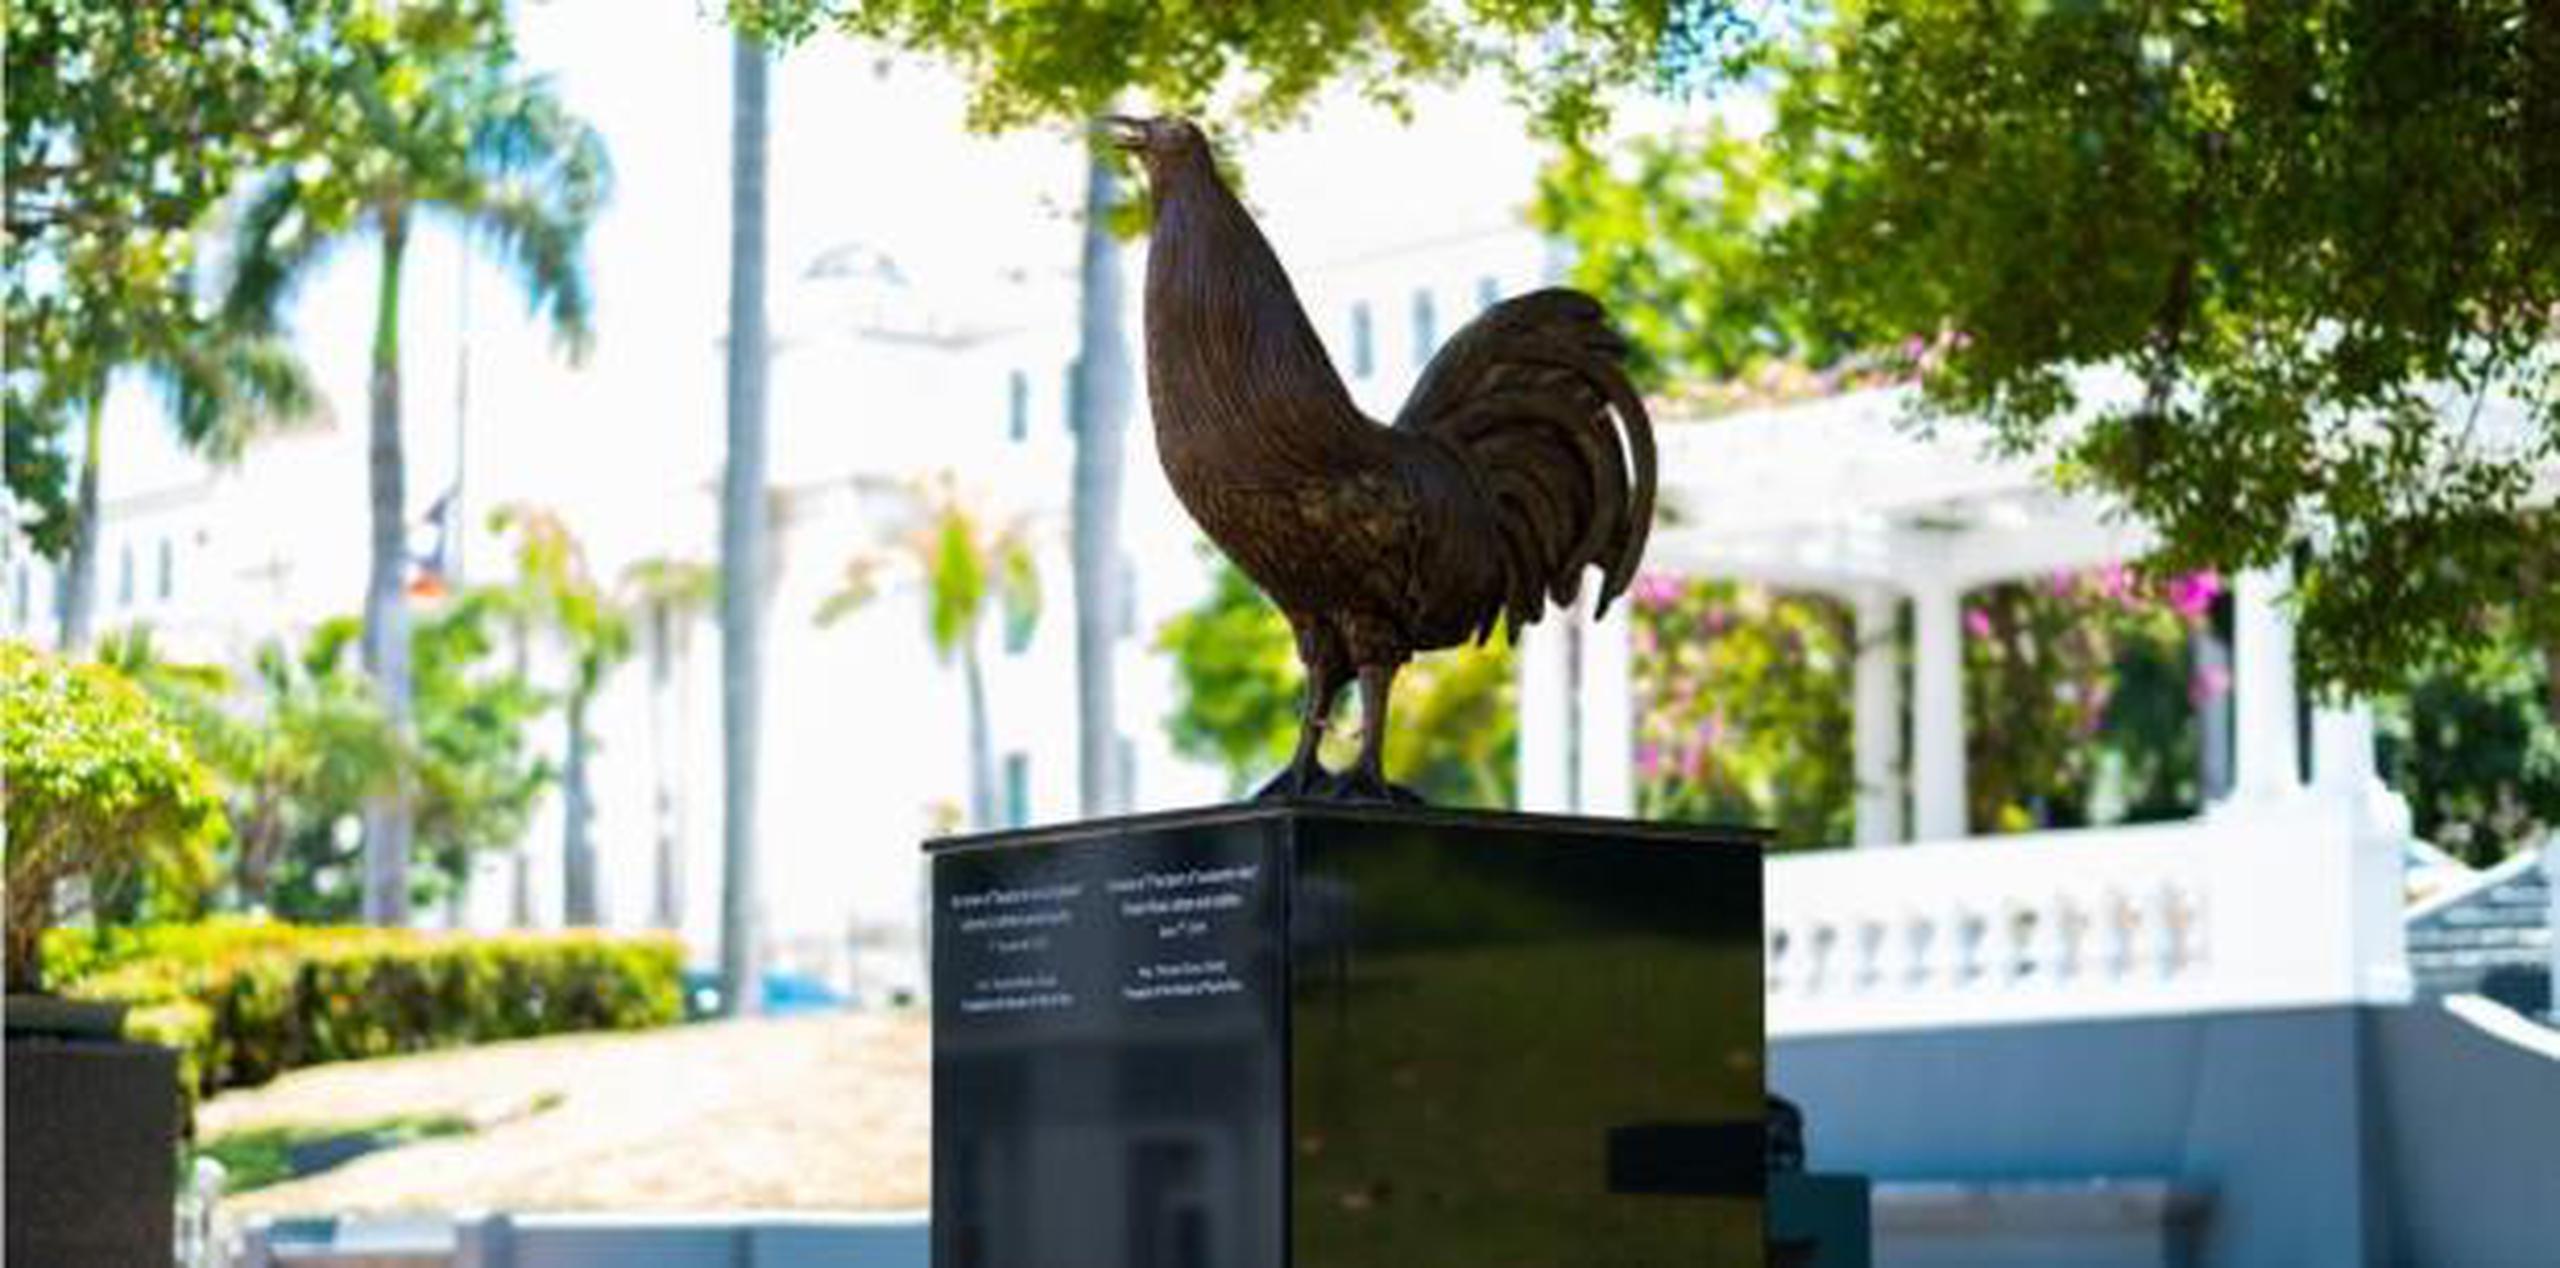 Sobre el costo de la estatua del gallo, develada el pasado 1 de junio, Rivera Schatz se remitió al comunicado de la Superintendencia del Capitolio que dice que la actividad costó $36 mil. (tonito.zayas@gfrmedia.com)